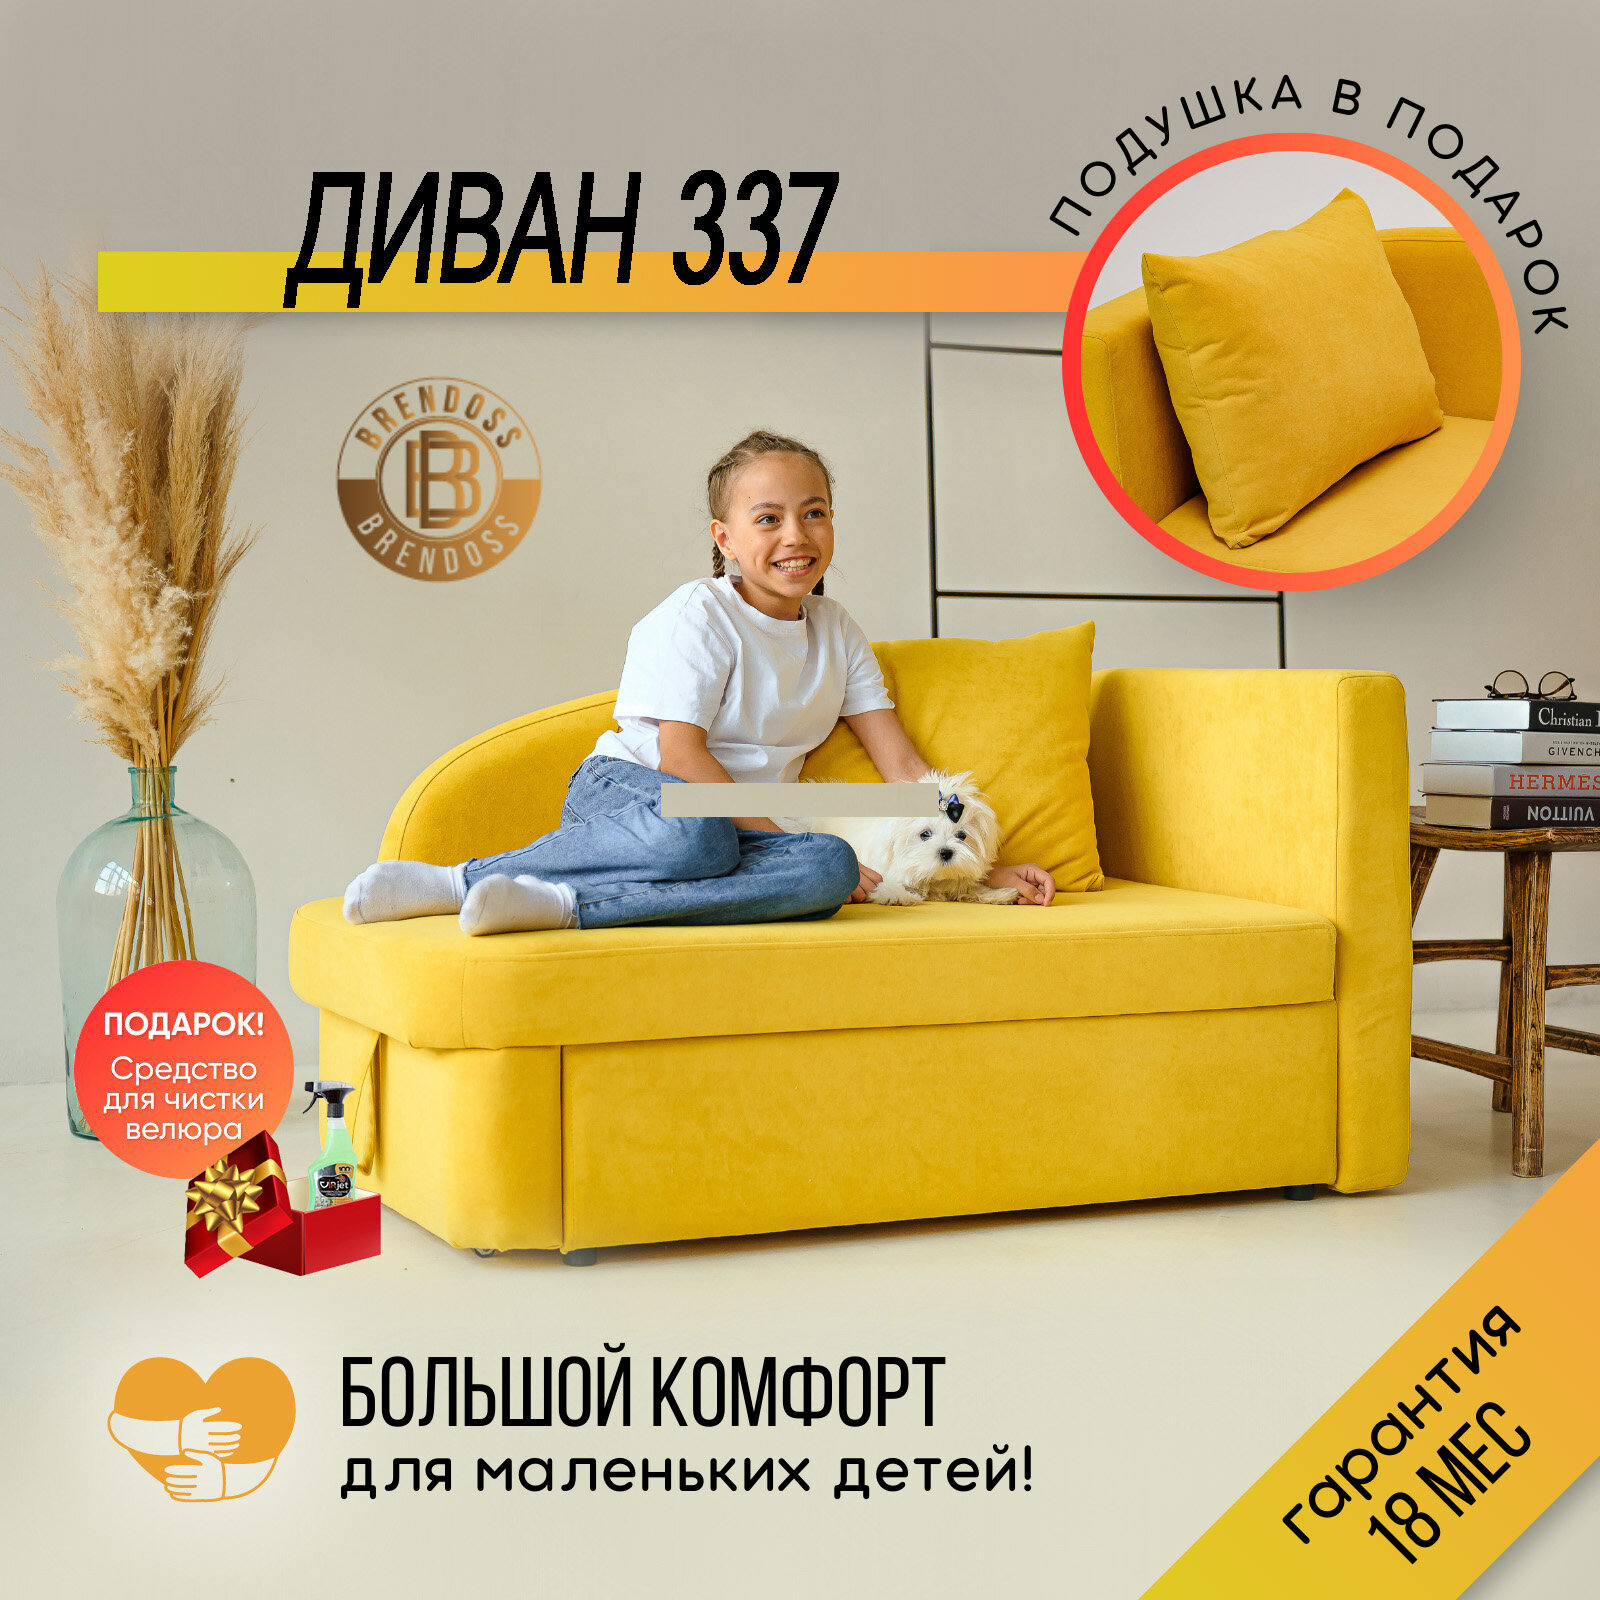 Детский диван-кровать раскладной, 337 диван правая ориентация, цвет желтый 130х73х67 см